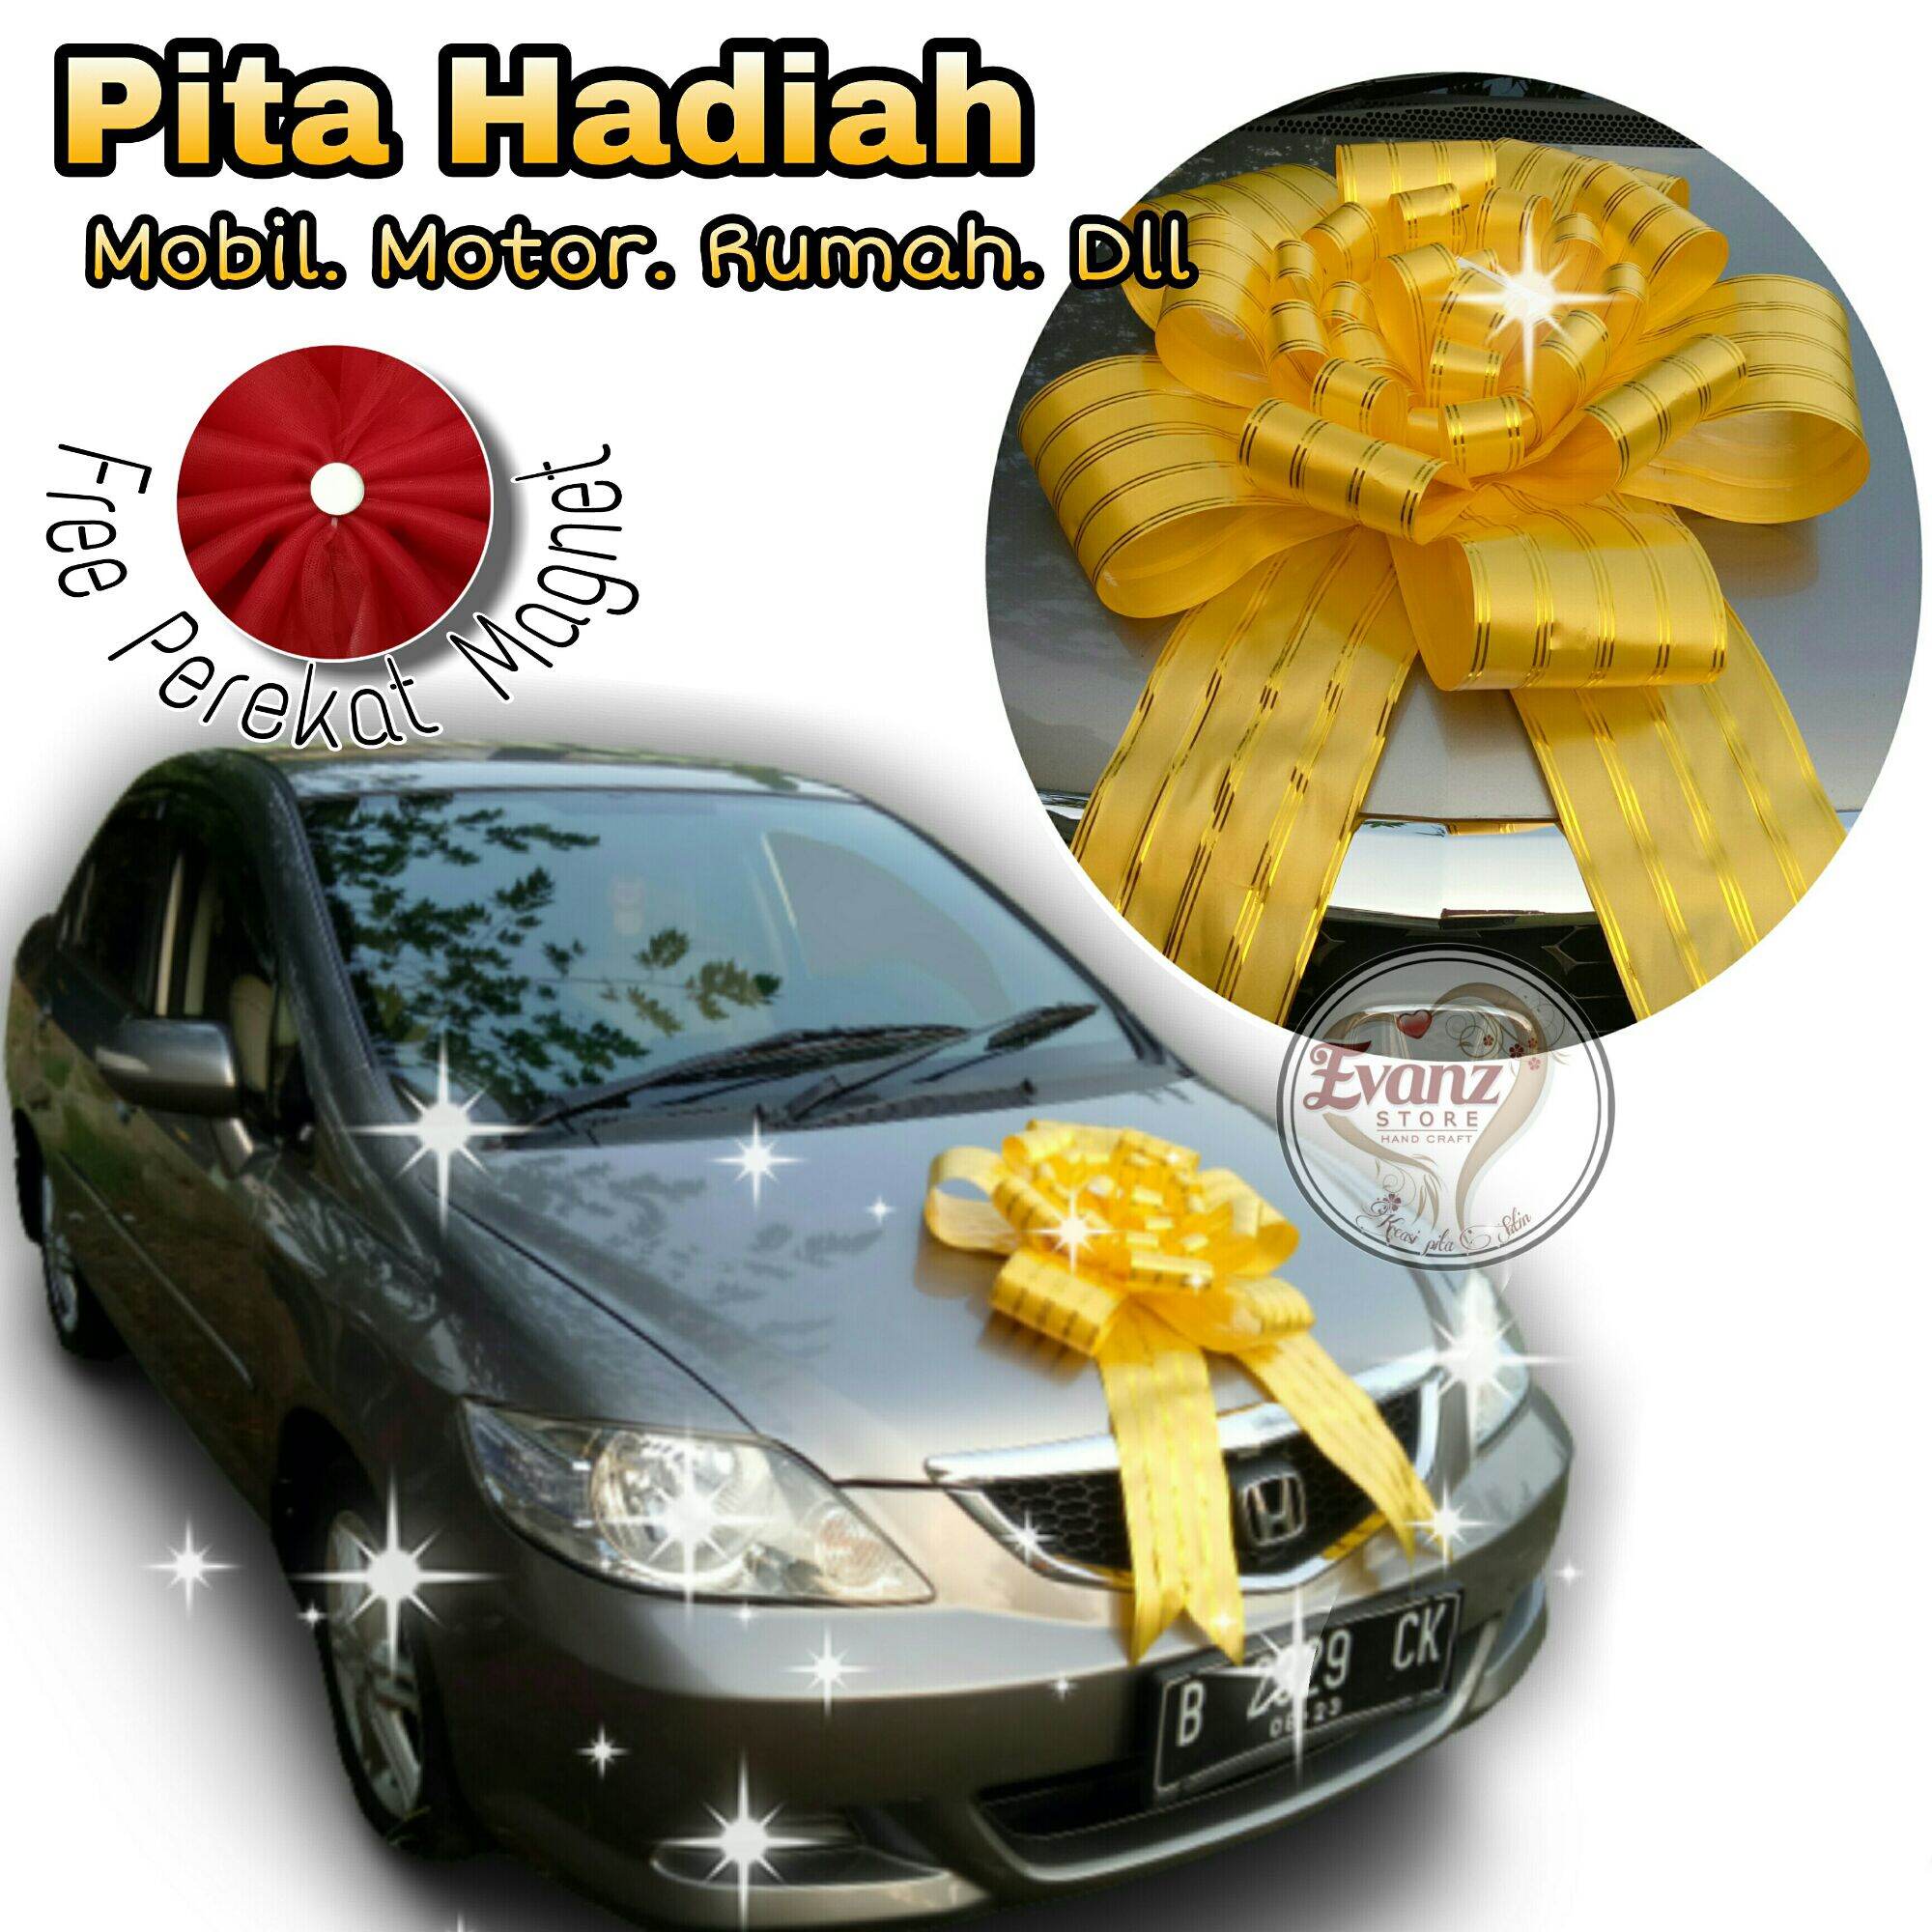 Pita Hadiah Mobil Motor Pita Jepang Diameter 65cm Free Magnet Pita Acara Aksesoris Mobil Pita Kado Lazada Indonesia